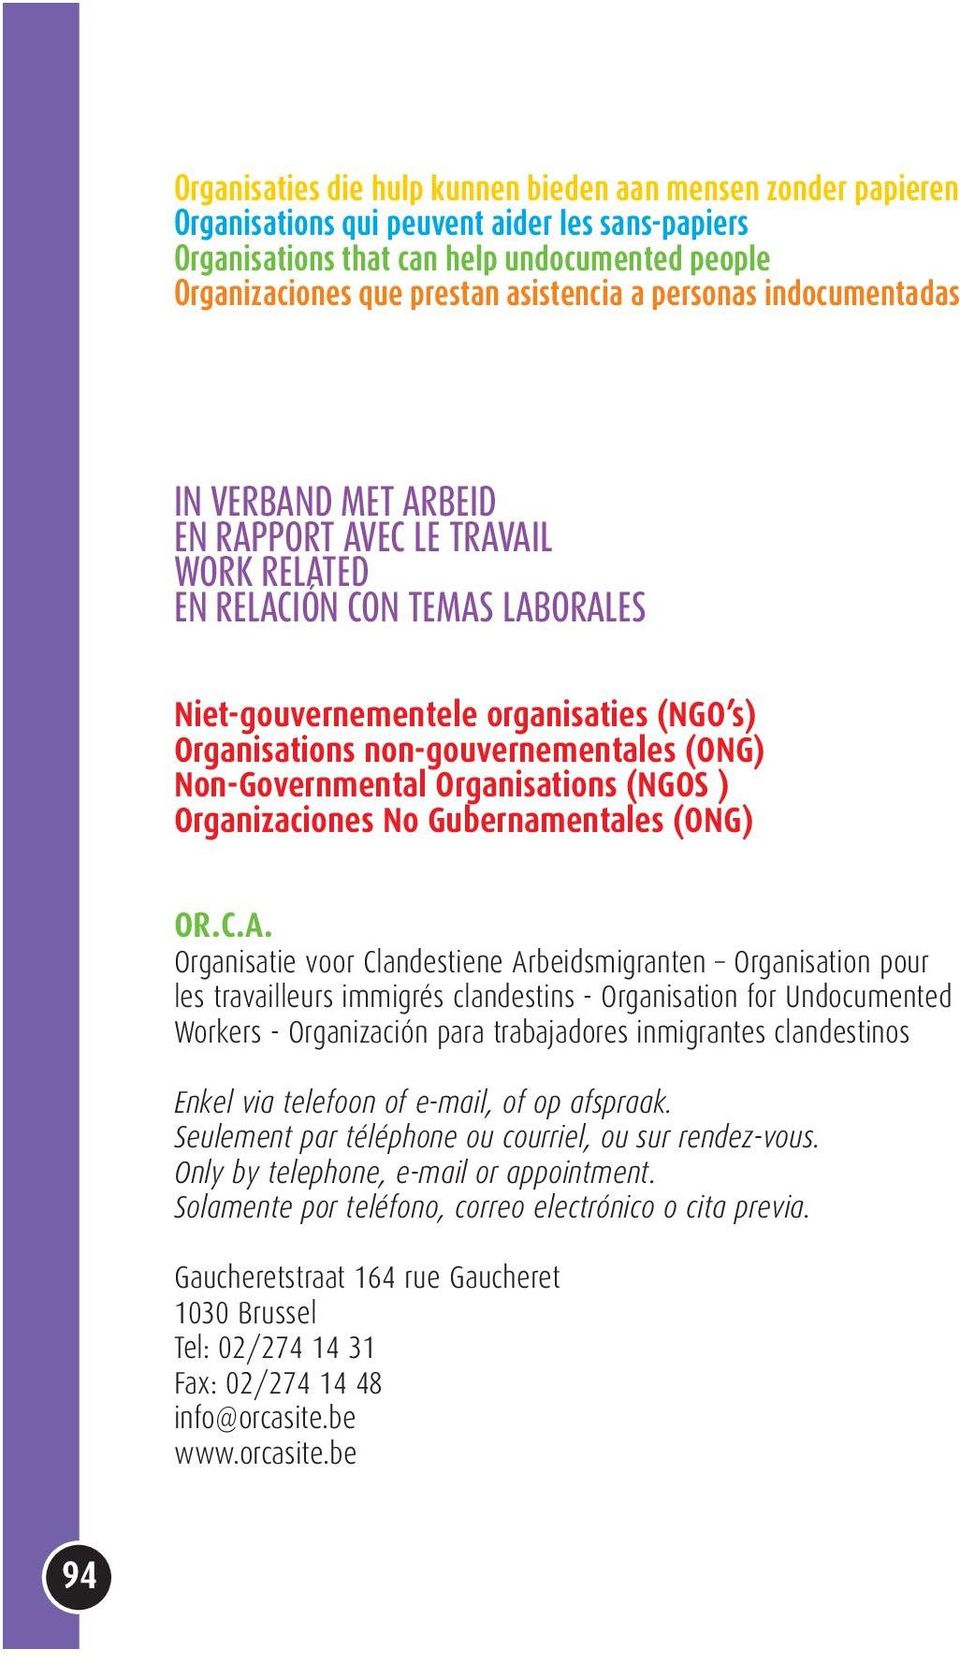 (ONG) Non-Governmental Organisations (NGOS ) Organizaciones No Gubernamentales (ONG) OR.C.A.